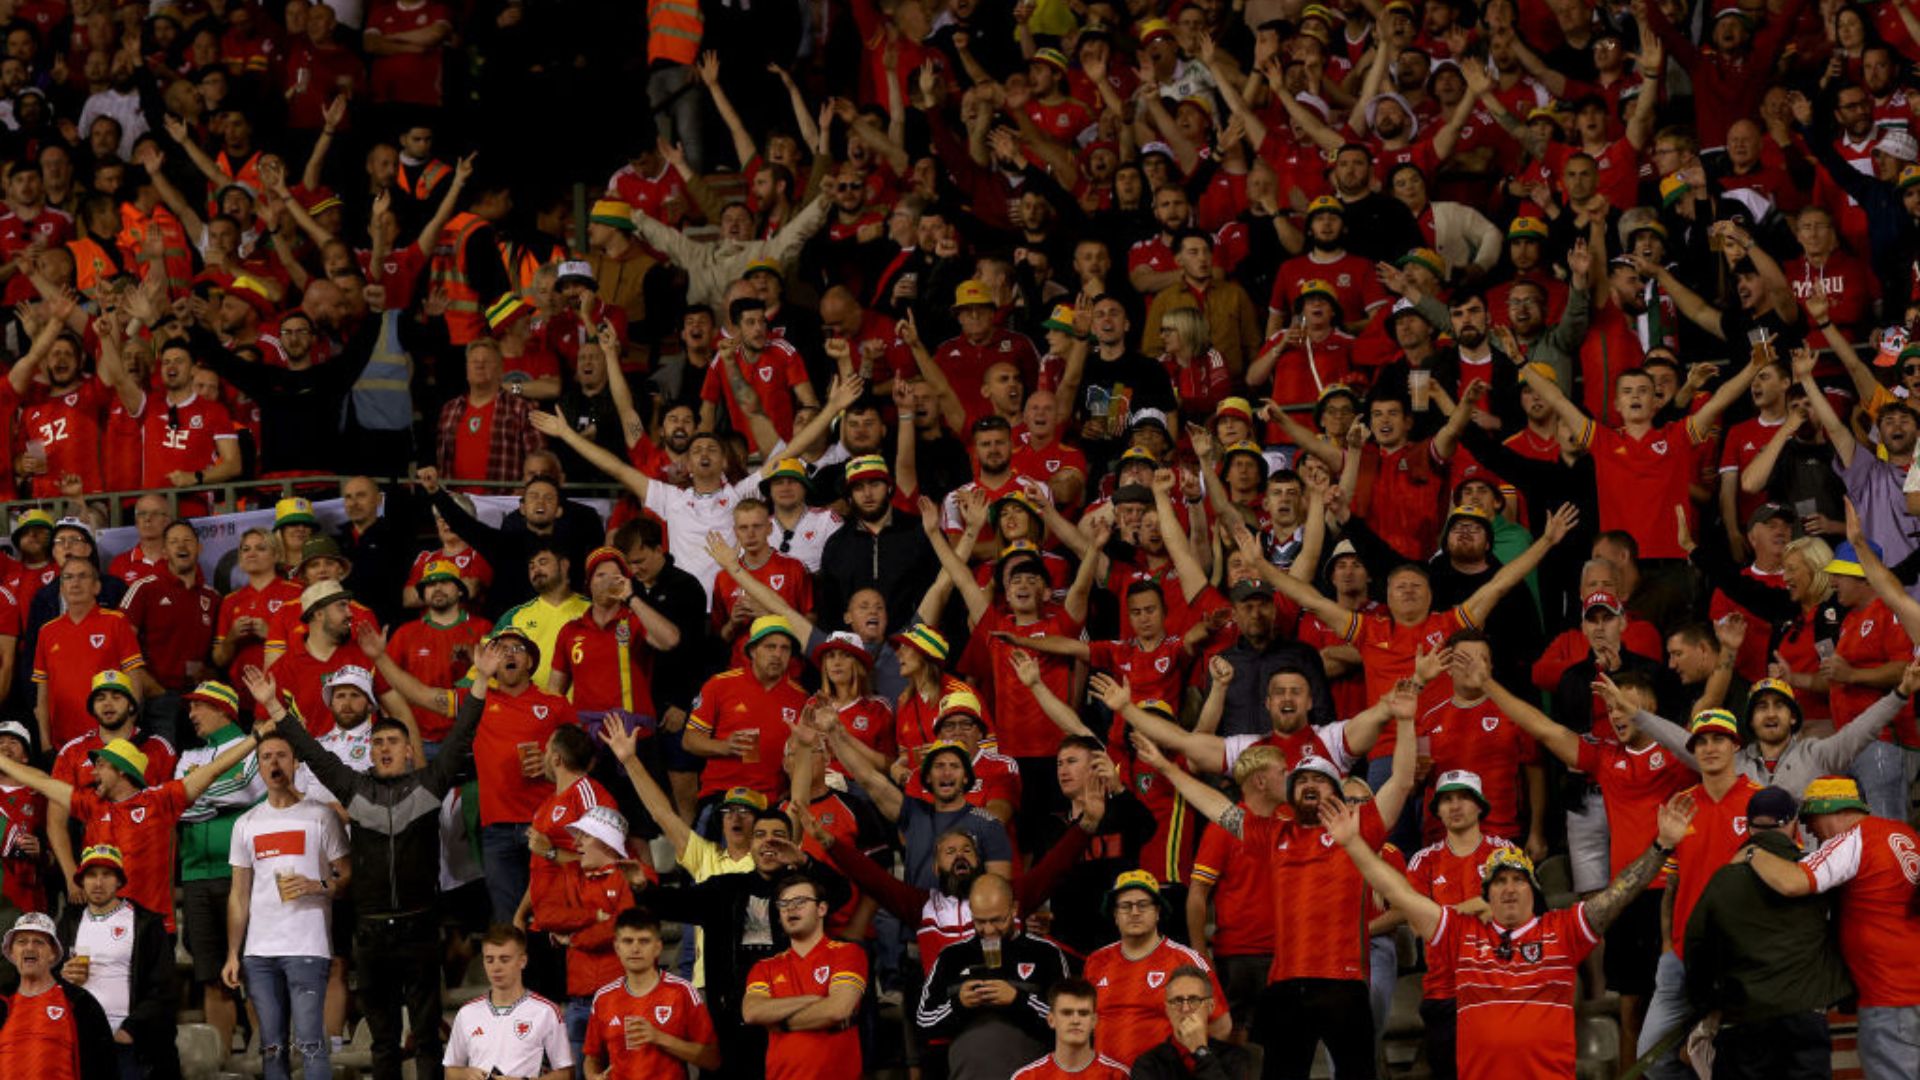 Torcida de Gales celebrando o gol na partida contra a Bélgica